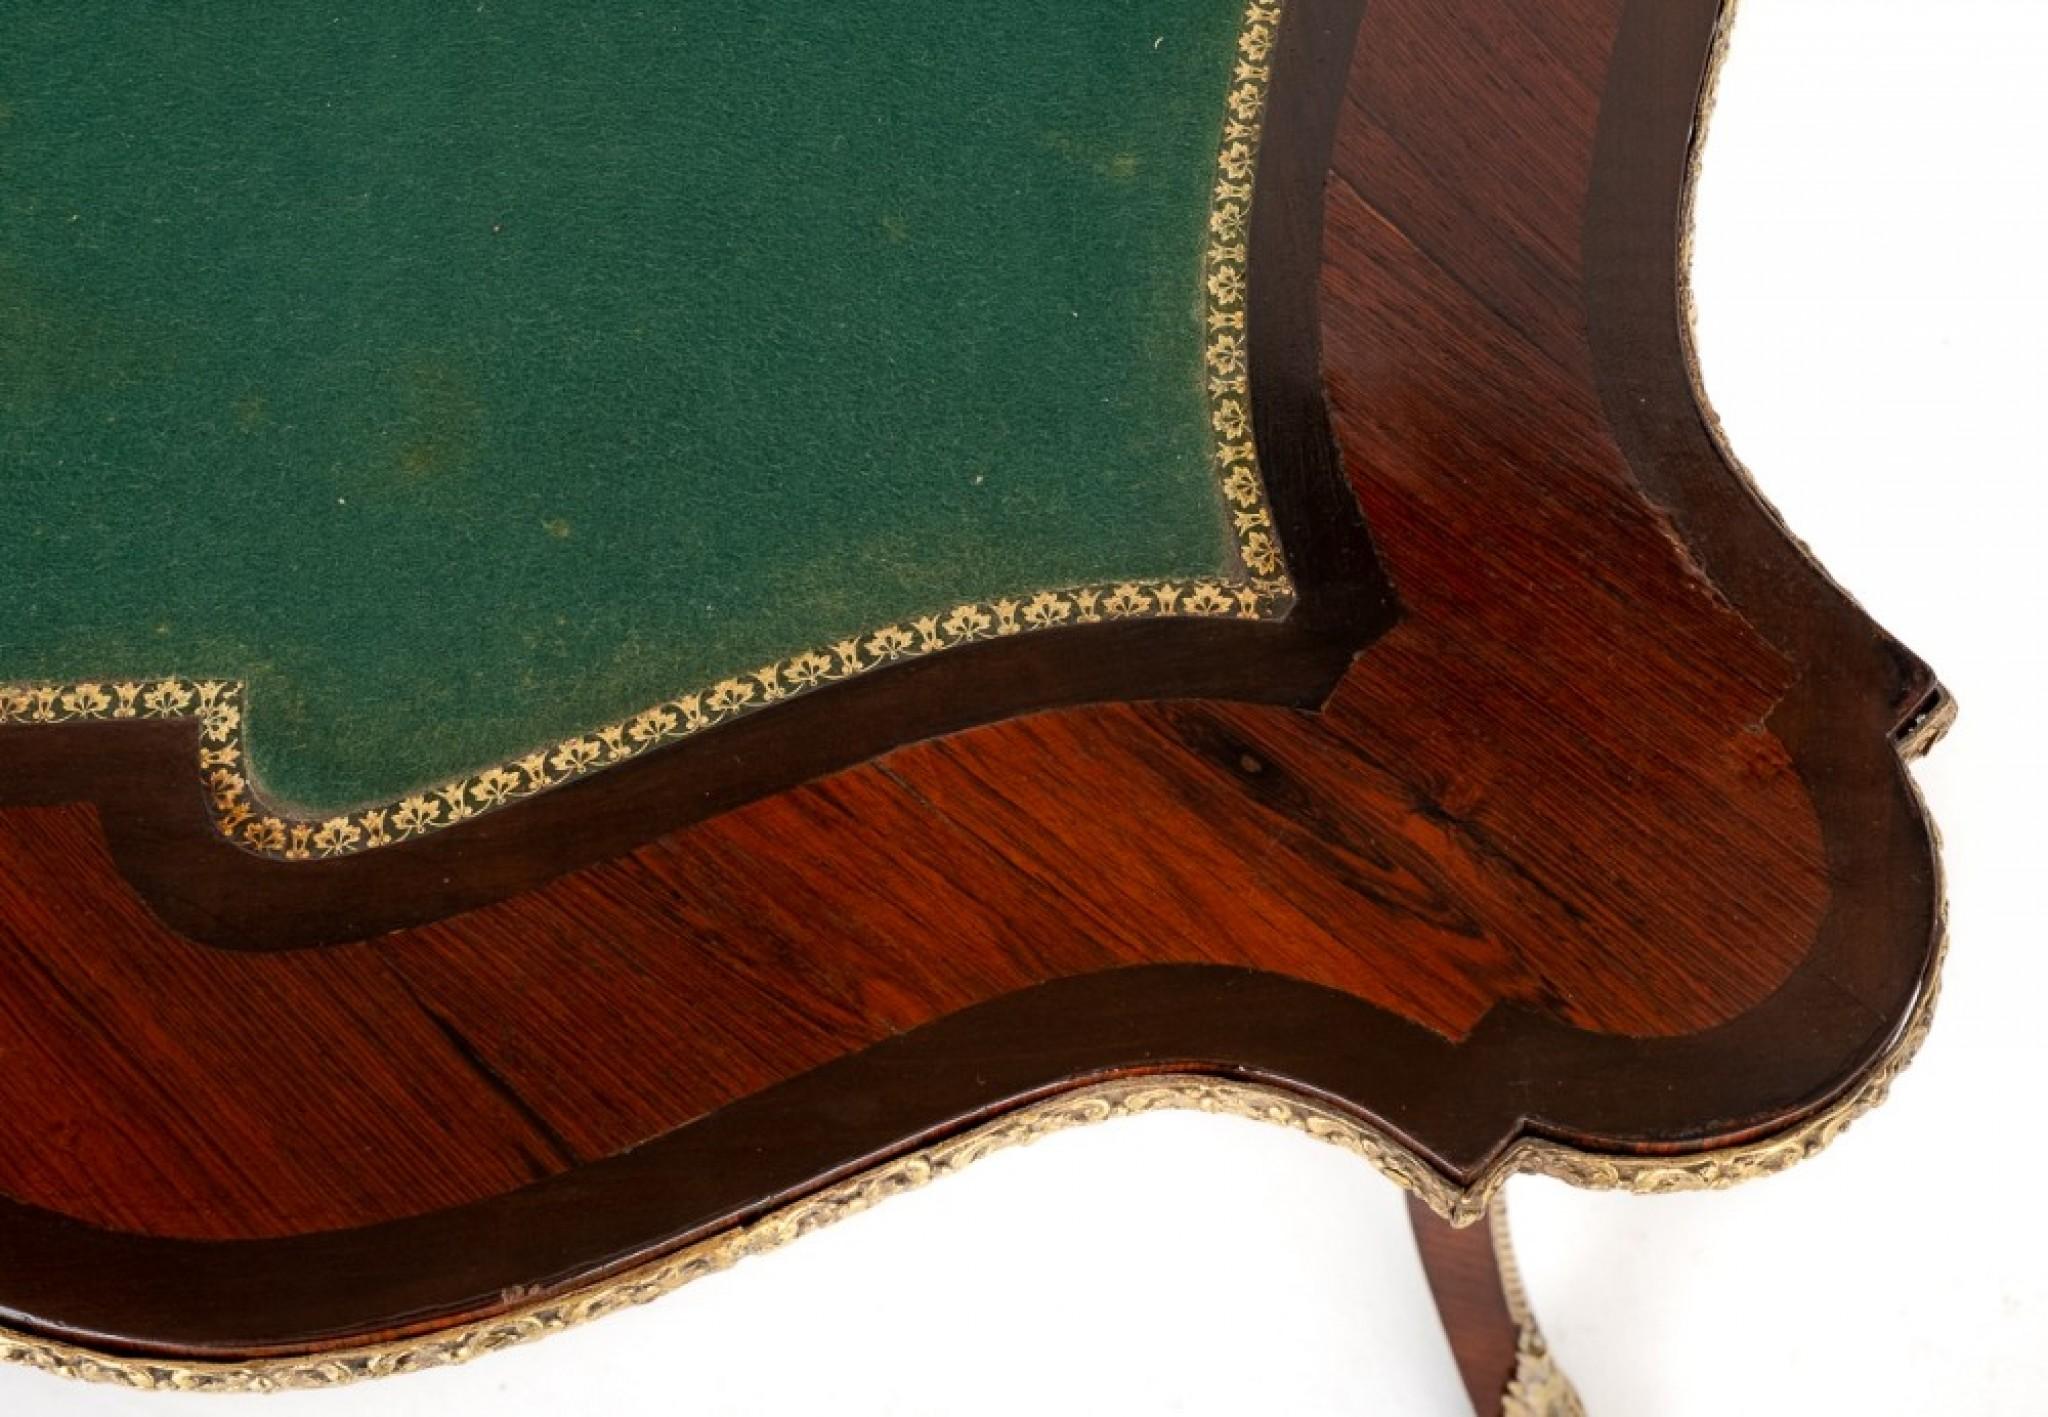 Gute Qualität Mahagoni und Palisander Französisch Karte Tabelle.
Diese atemberaubende Französisch Kartentisch steht auf geformten Beinen mit Ormolu montiert, um die Füße und Knie.
CIRCA 1860
Der geformte Fries hat gegossene Ormolu-Formen.
Die